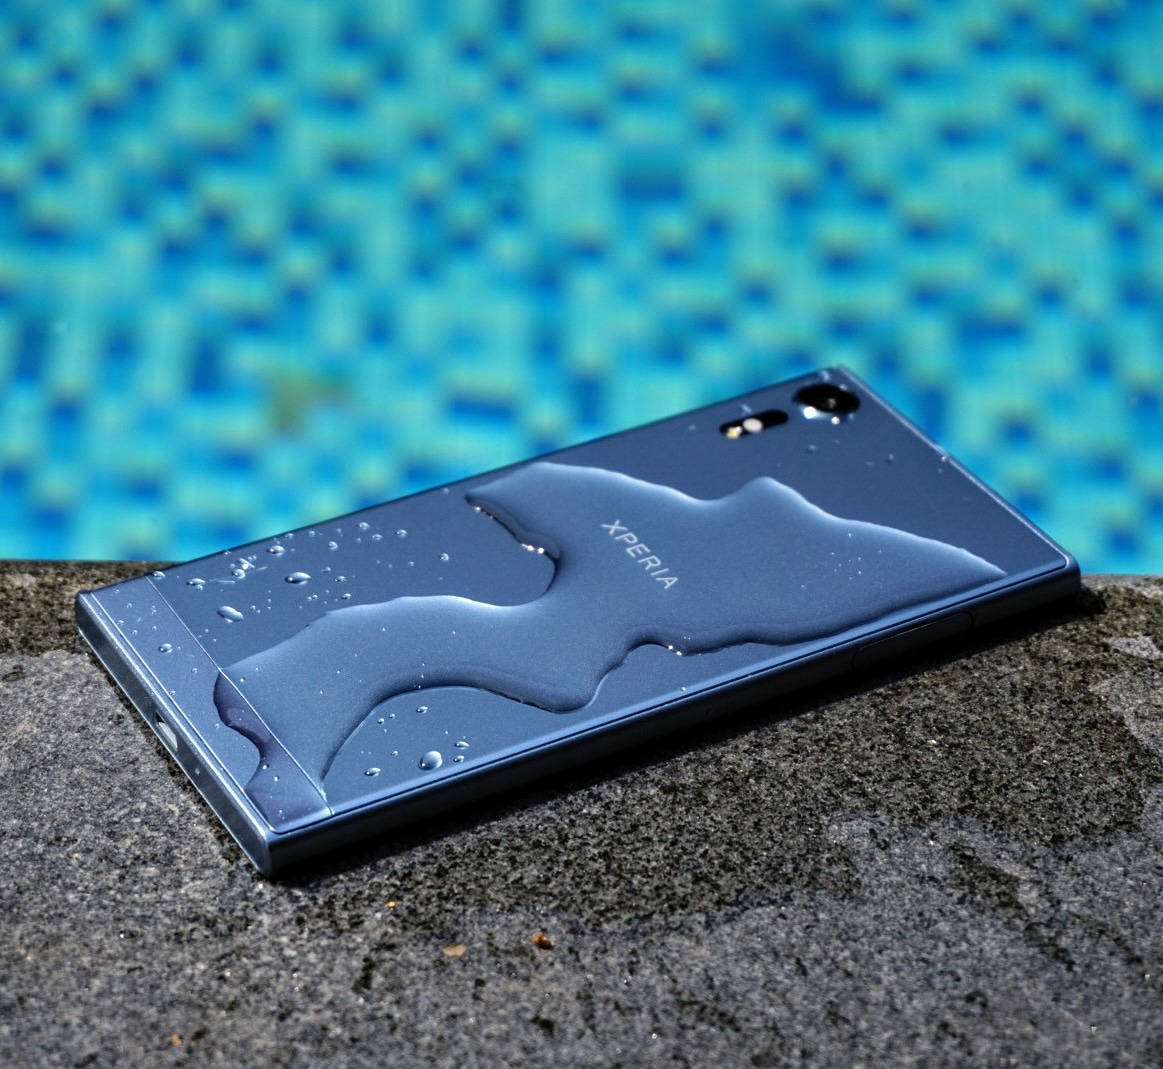 Nắng nóng quá đem điện thoại đi bơi, anh em có hay mang điện thoại xuống nước?